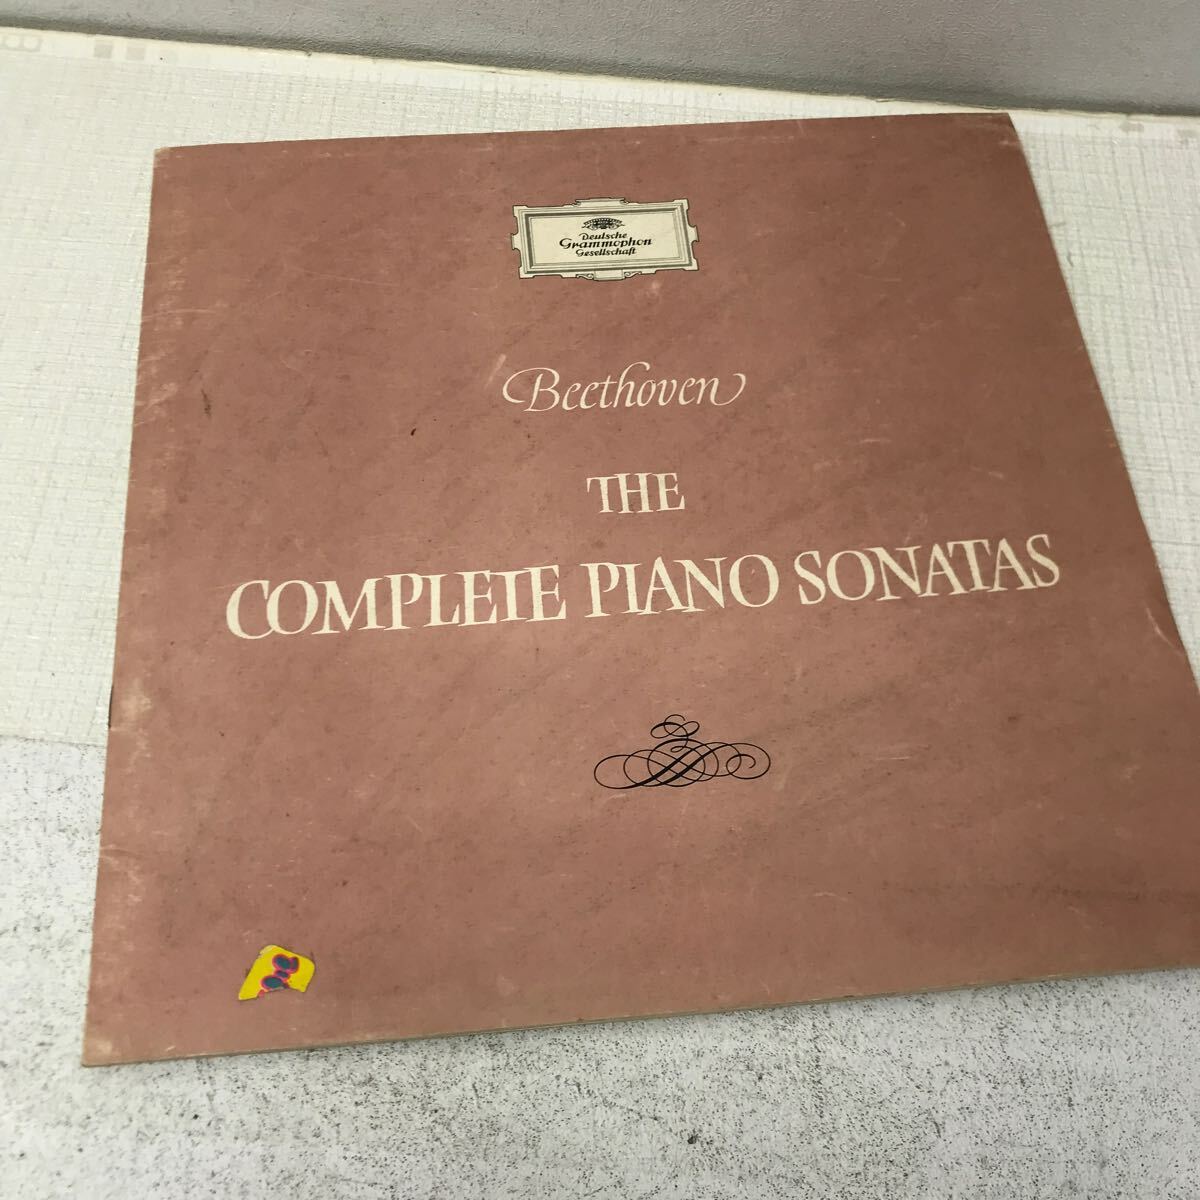 I0416B3 ベートーヴェン ピアノ・ソナタ全集 BEETHOVEN THE COMPLETE PIANO SONATAS LP レコード 11枚組 音楽 クラシック グラモフォンの画像8